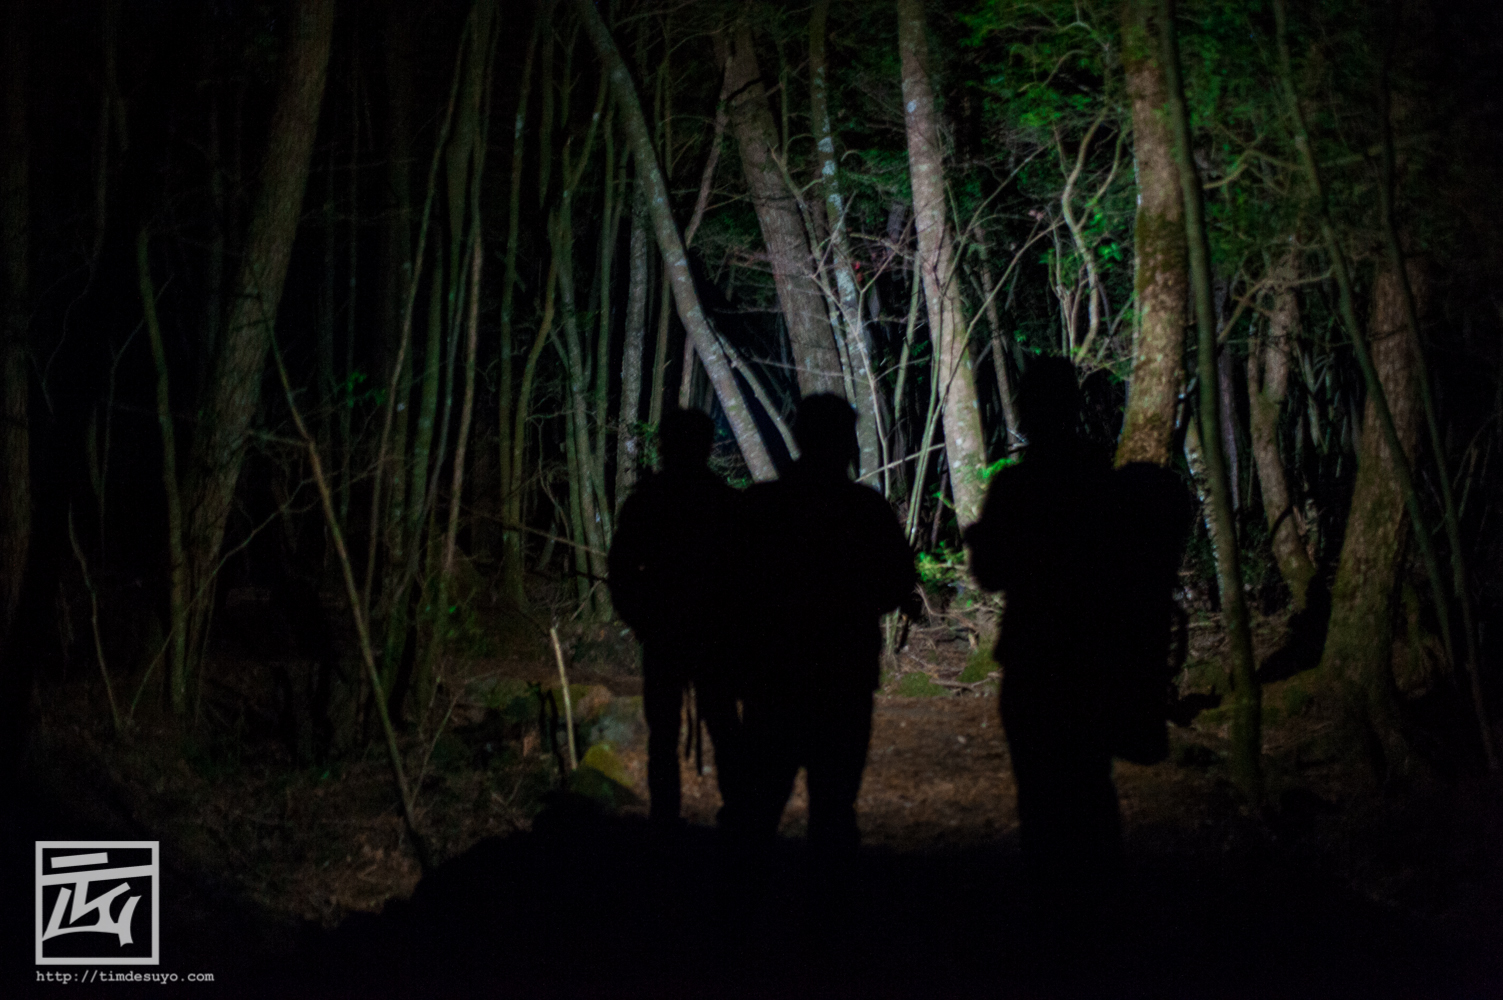 Rừng Aokigahara: Khu rừng bí hiểm Aokigahara của Nhật Bản nổi tiếng là điểm đến của những cái chết cô độc.